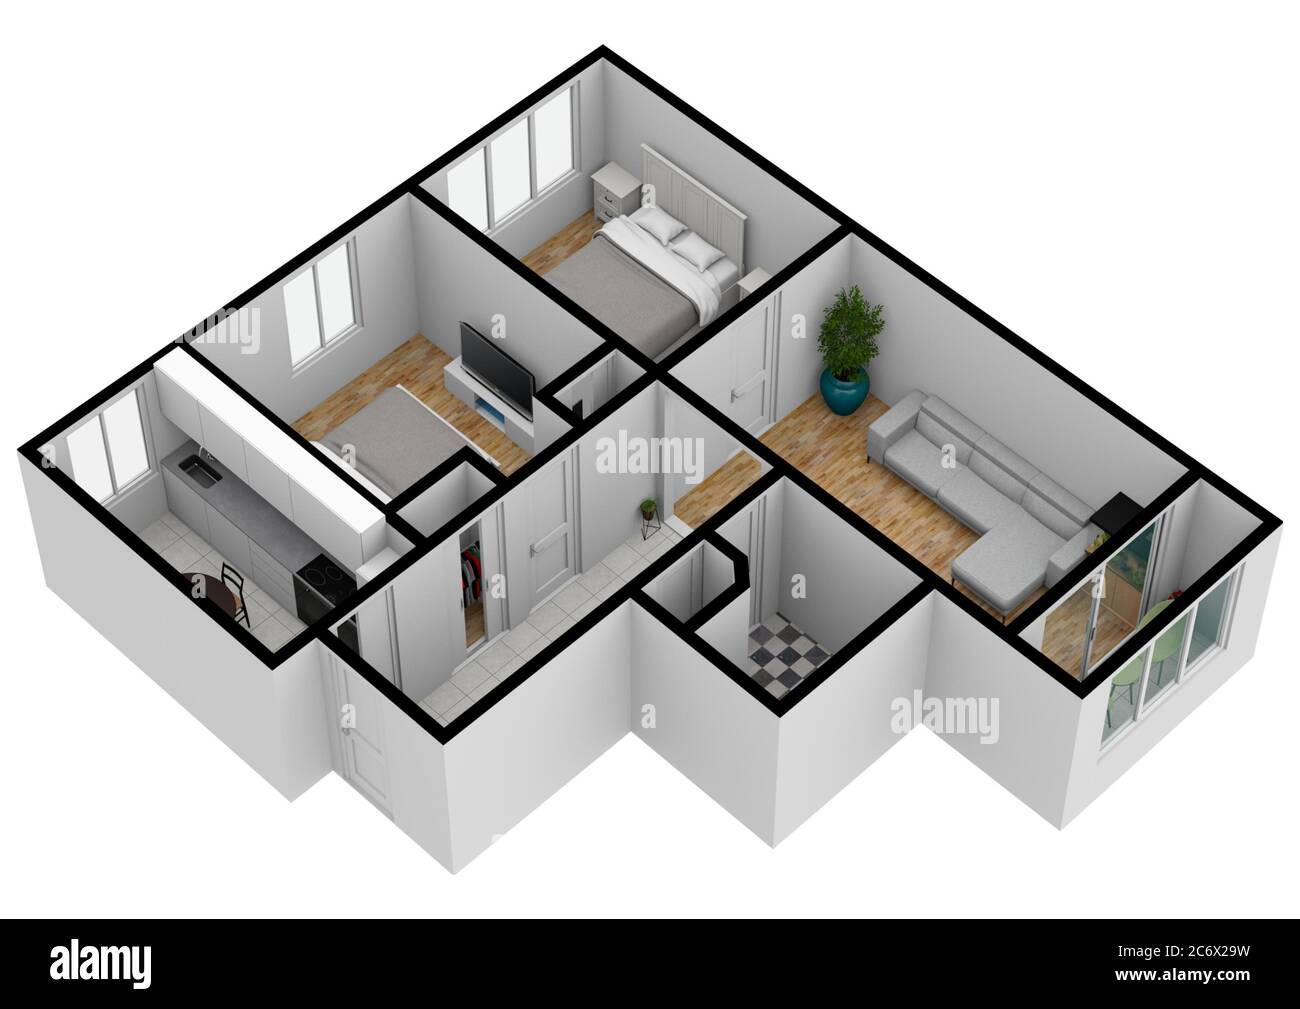 architecture home design 3d